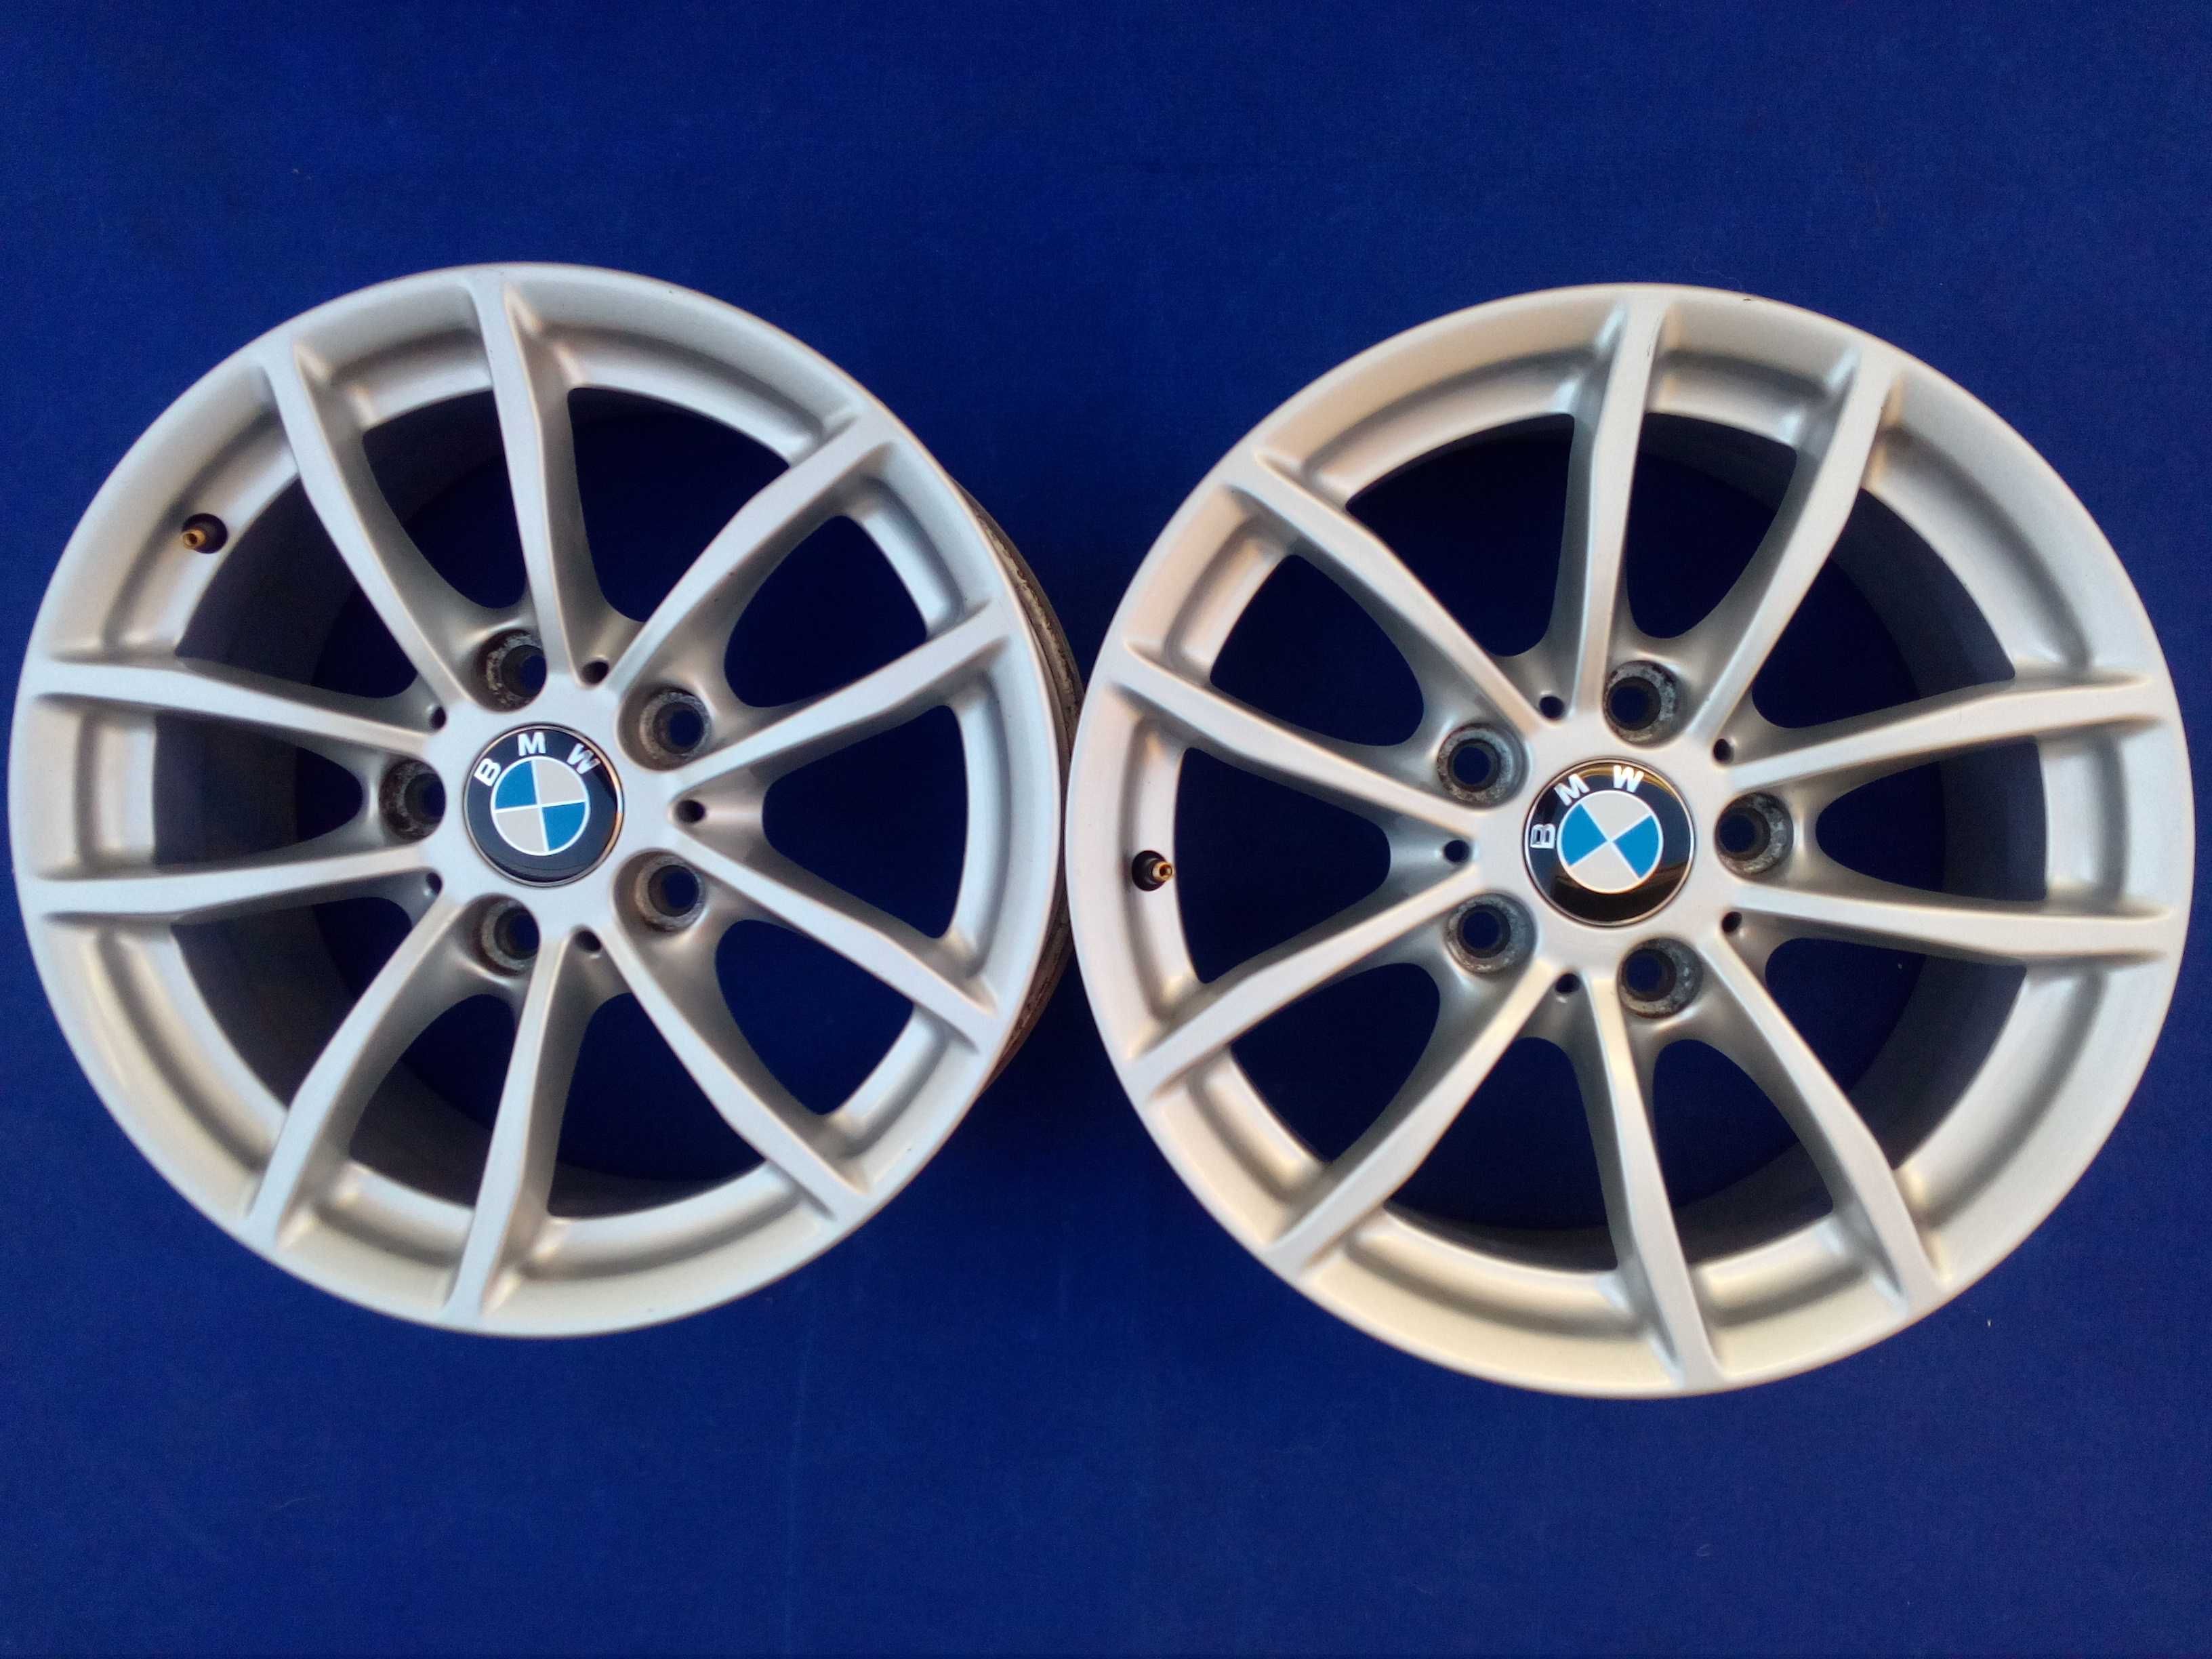 Jantes 16 5x120 BMW Serie 1 ou serie 3, para roda suplente ou circular